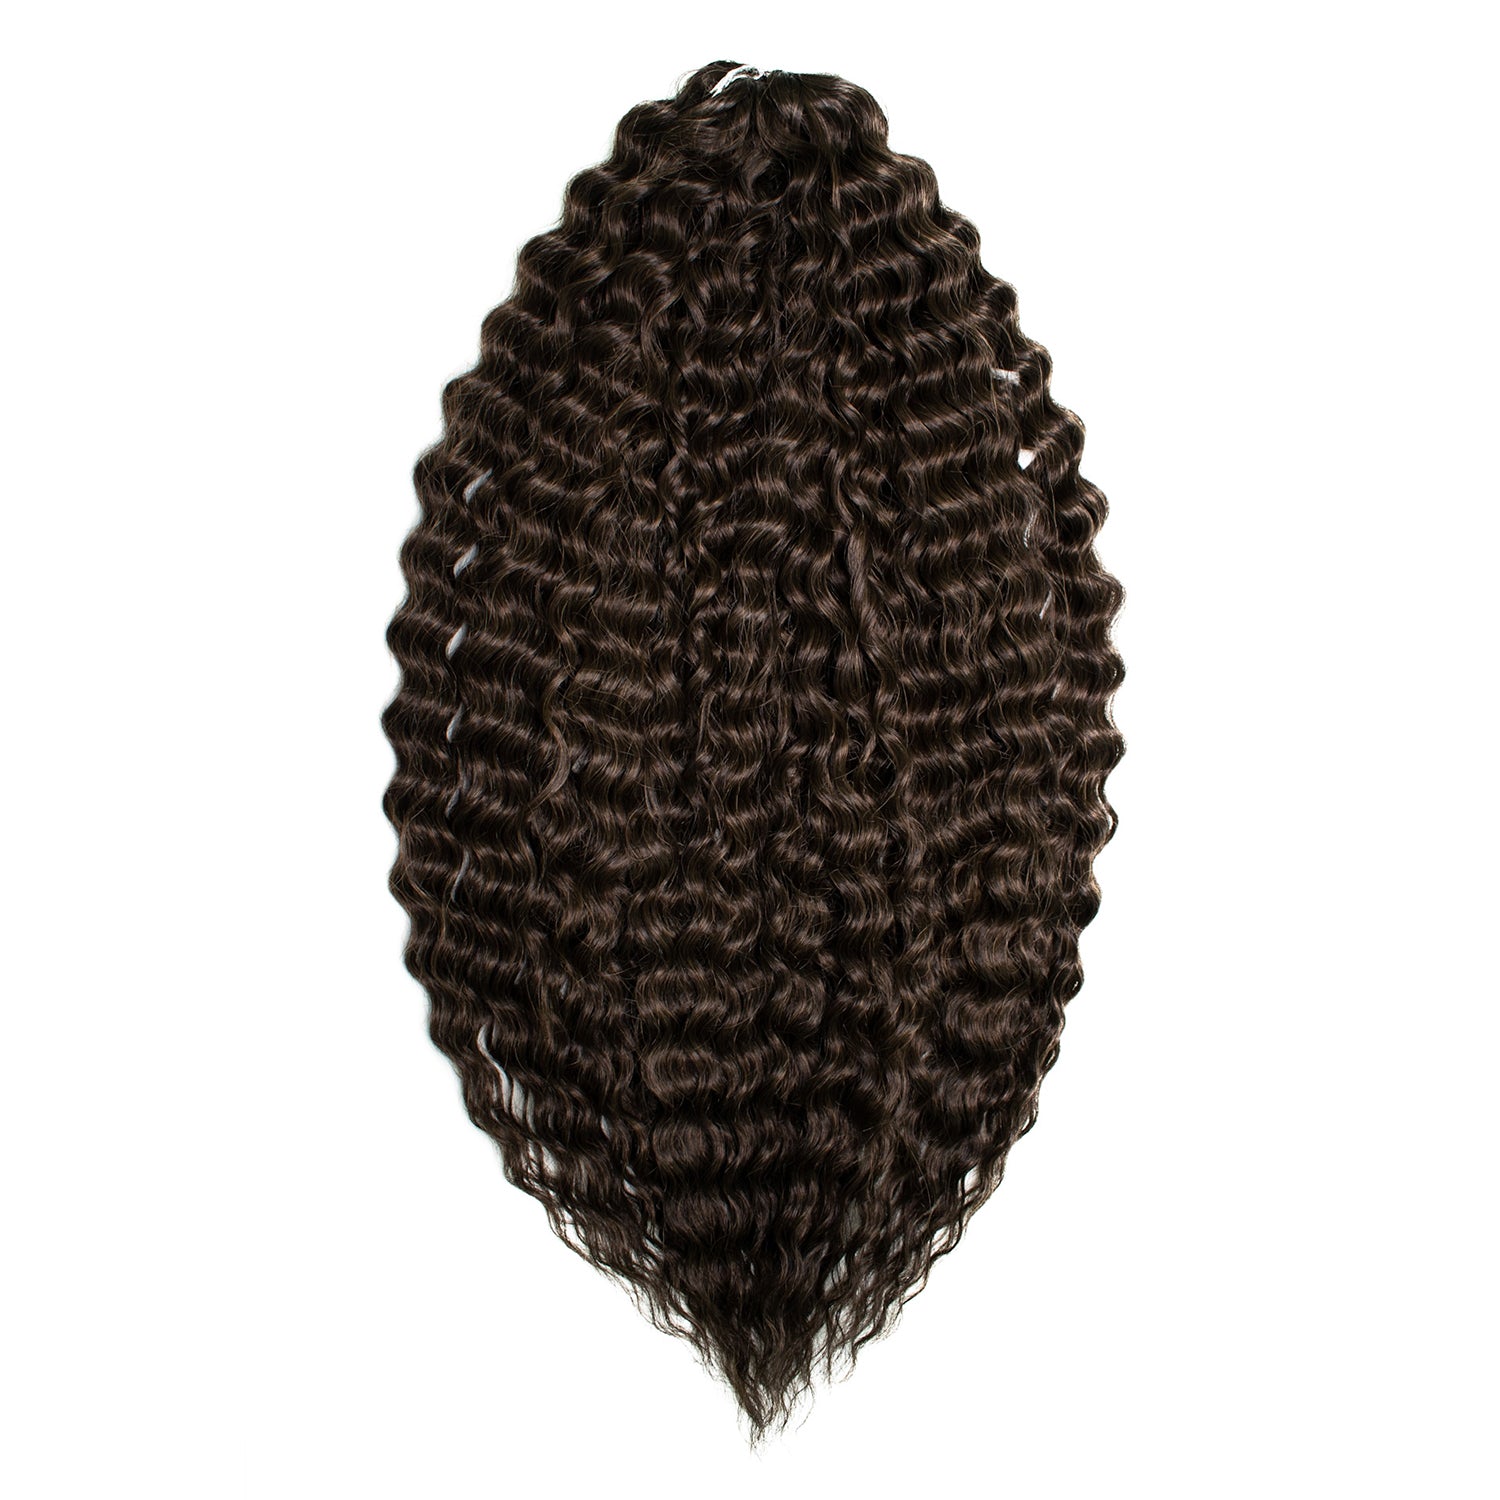 Афрокудри для плетения волос Ariel цвет 10 темно-каштановый длина 60см вес 300г наклейка 3д интерьерная динозавр 70 60см